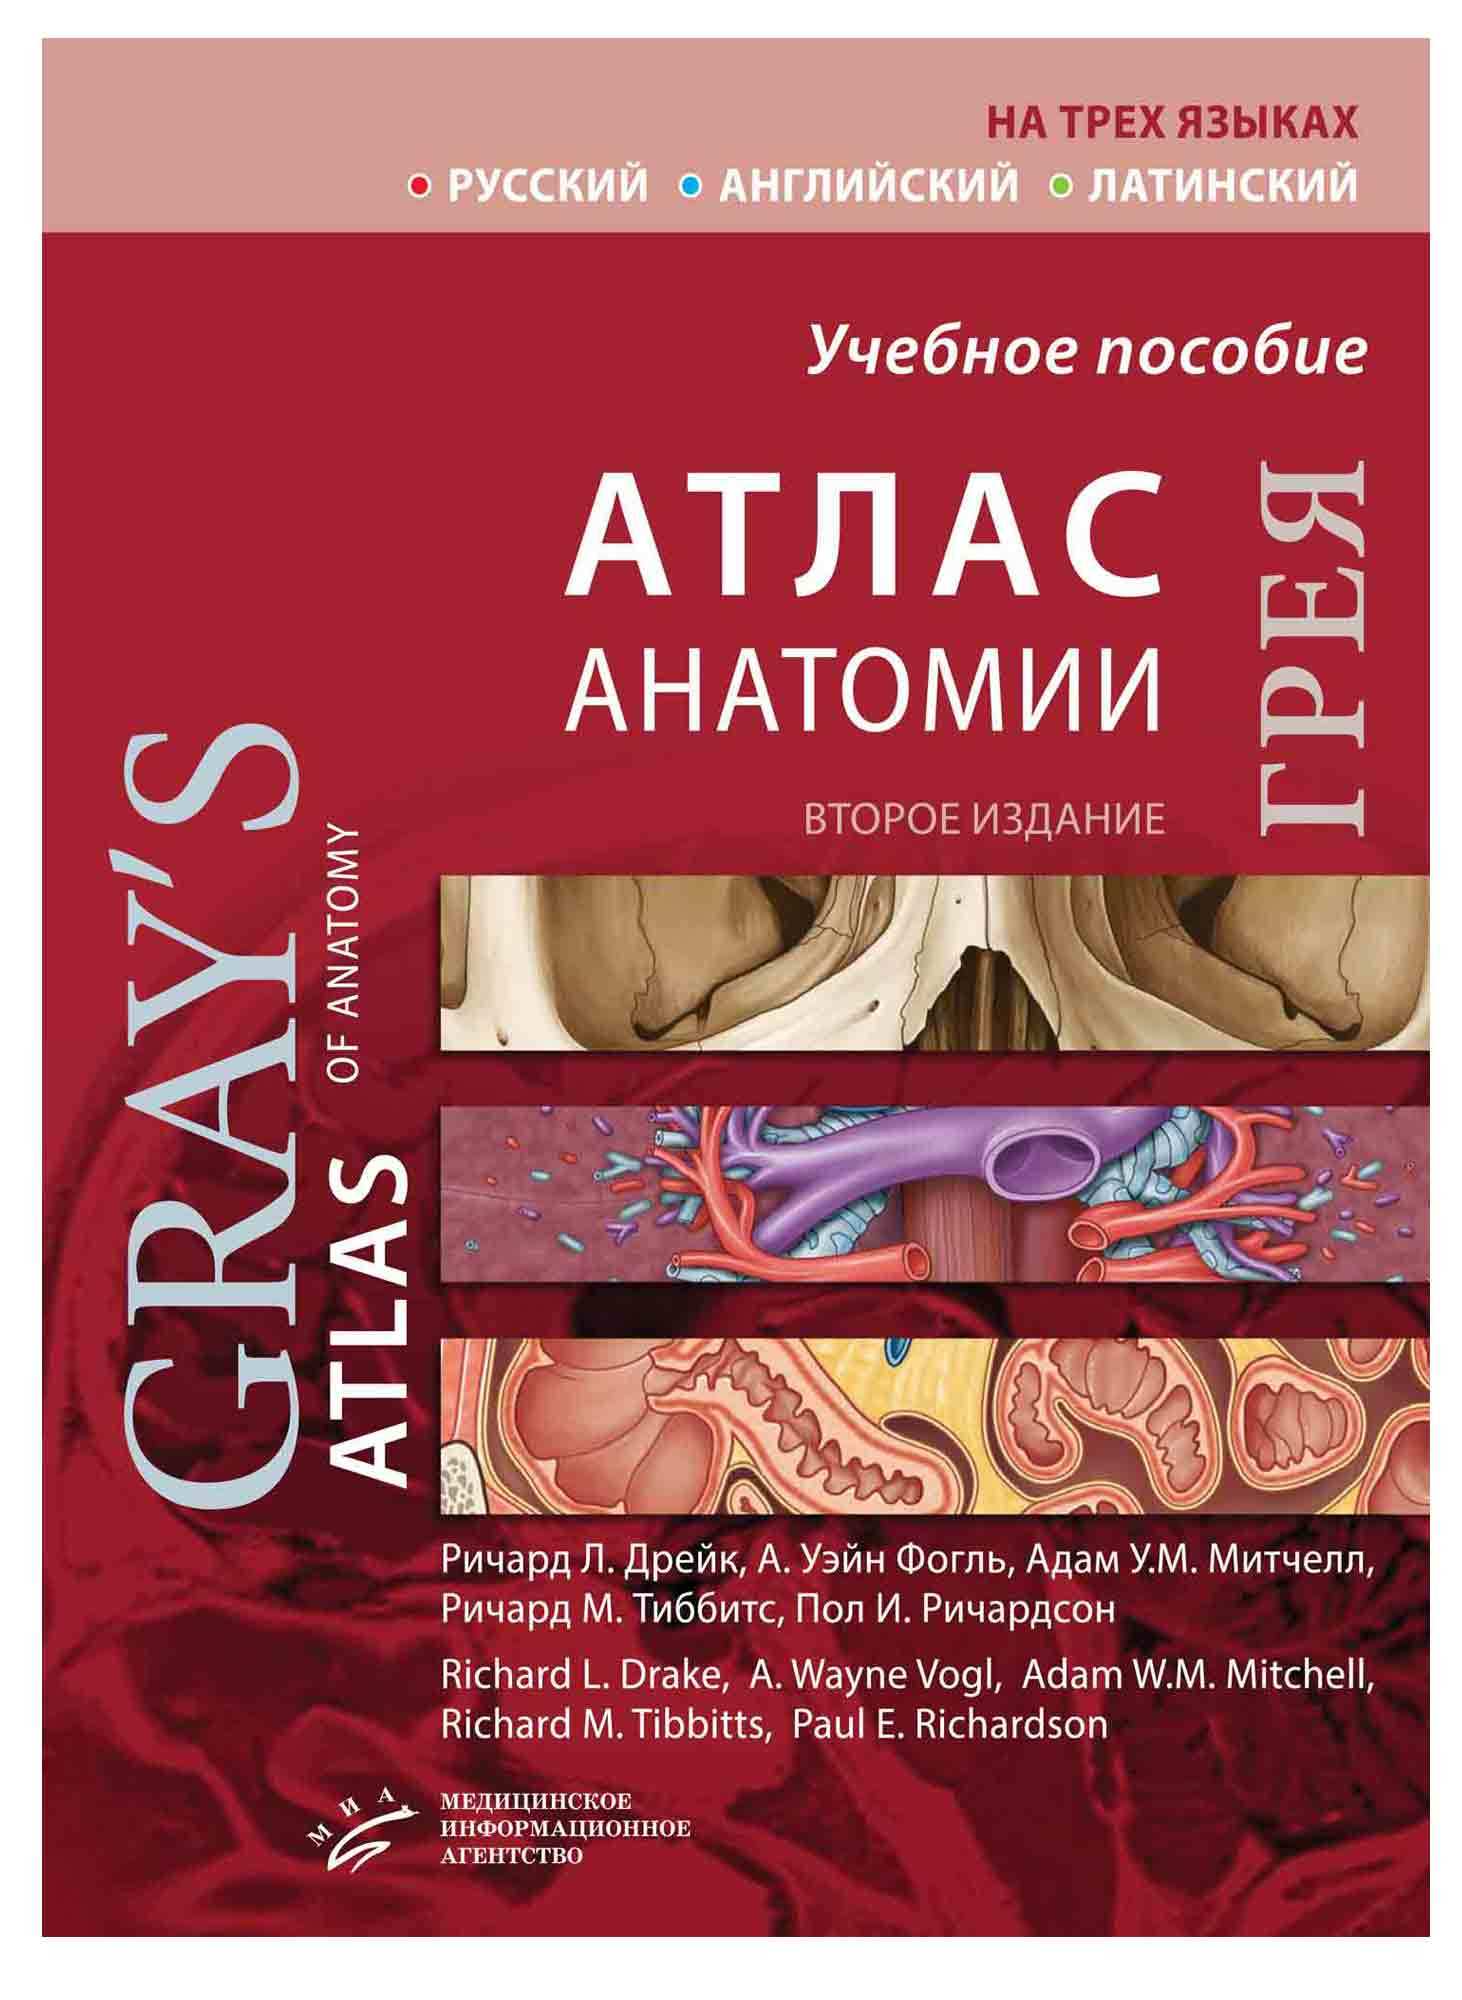 Книги по мануальной терапии Атлас анатомии Грея (Грэя)(на трех языках) grey2020.jpg